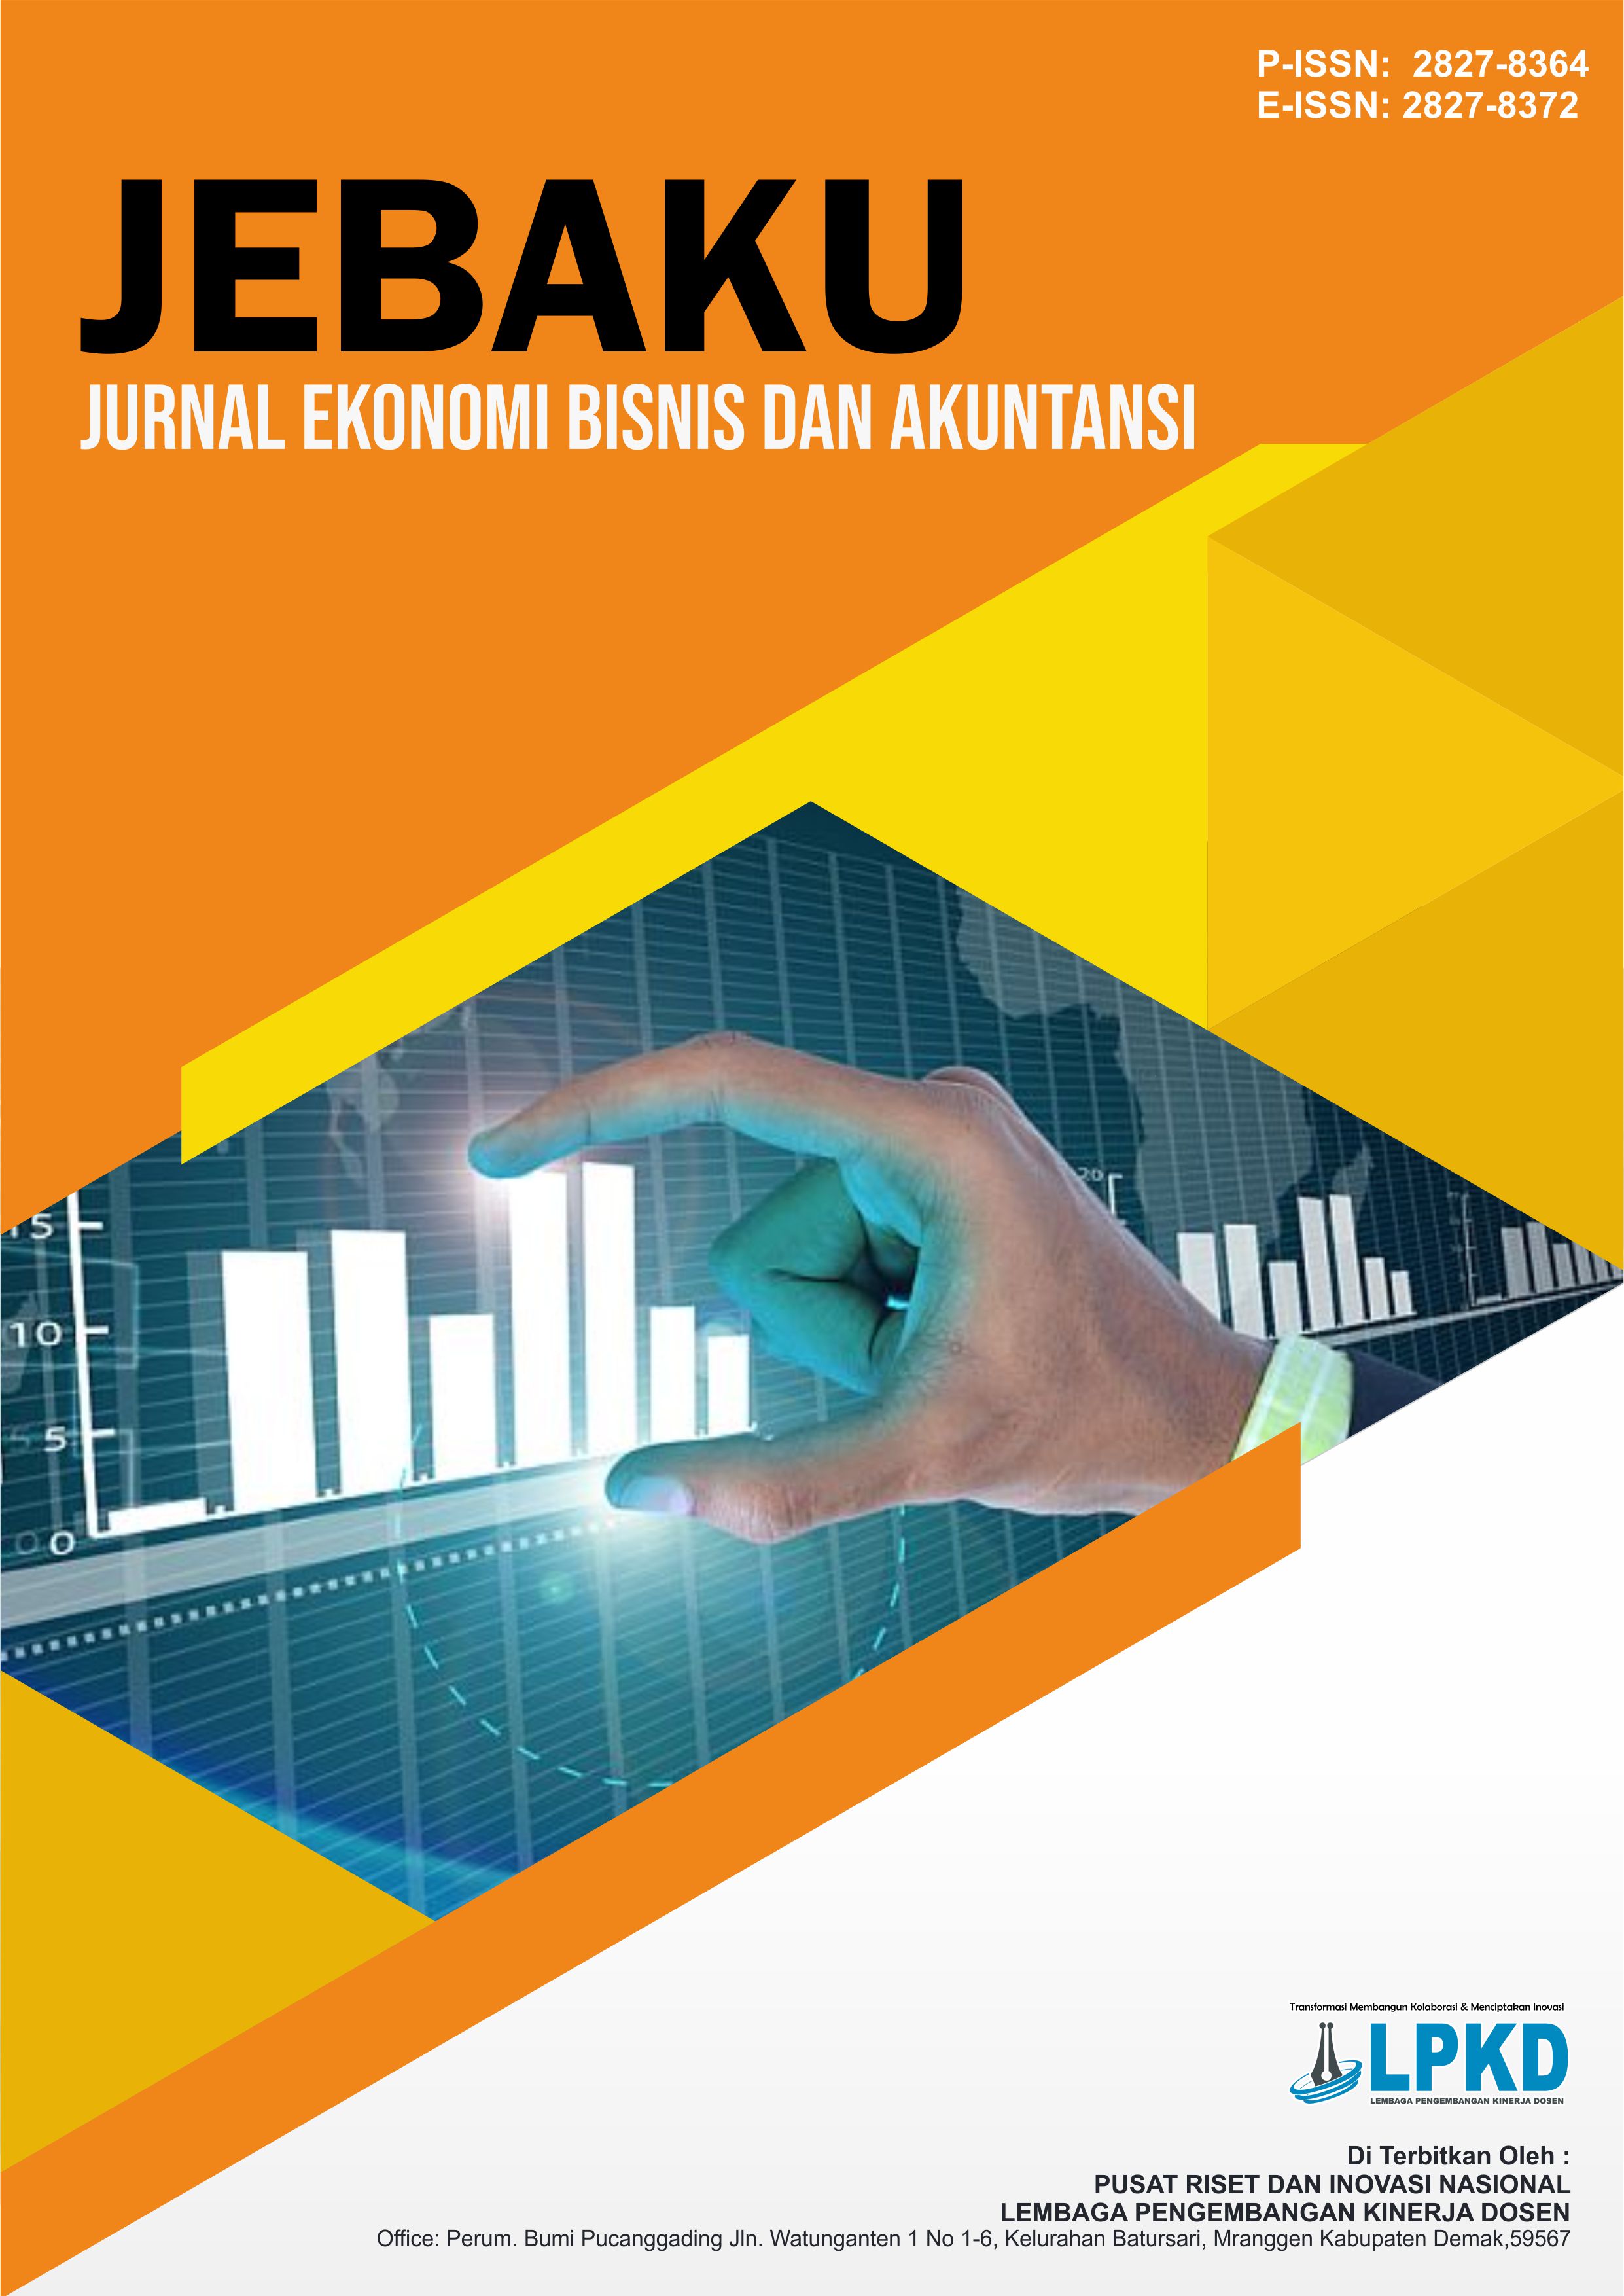 					View Vol. 1 No. 1 (2021): April : Jurnal Ekonomi Bisnis dan Akuntansi (JEBAKU)
				